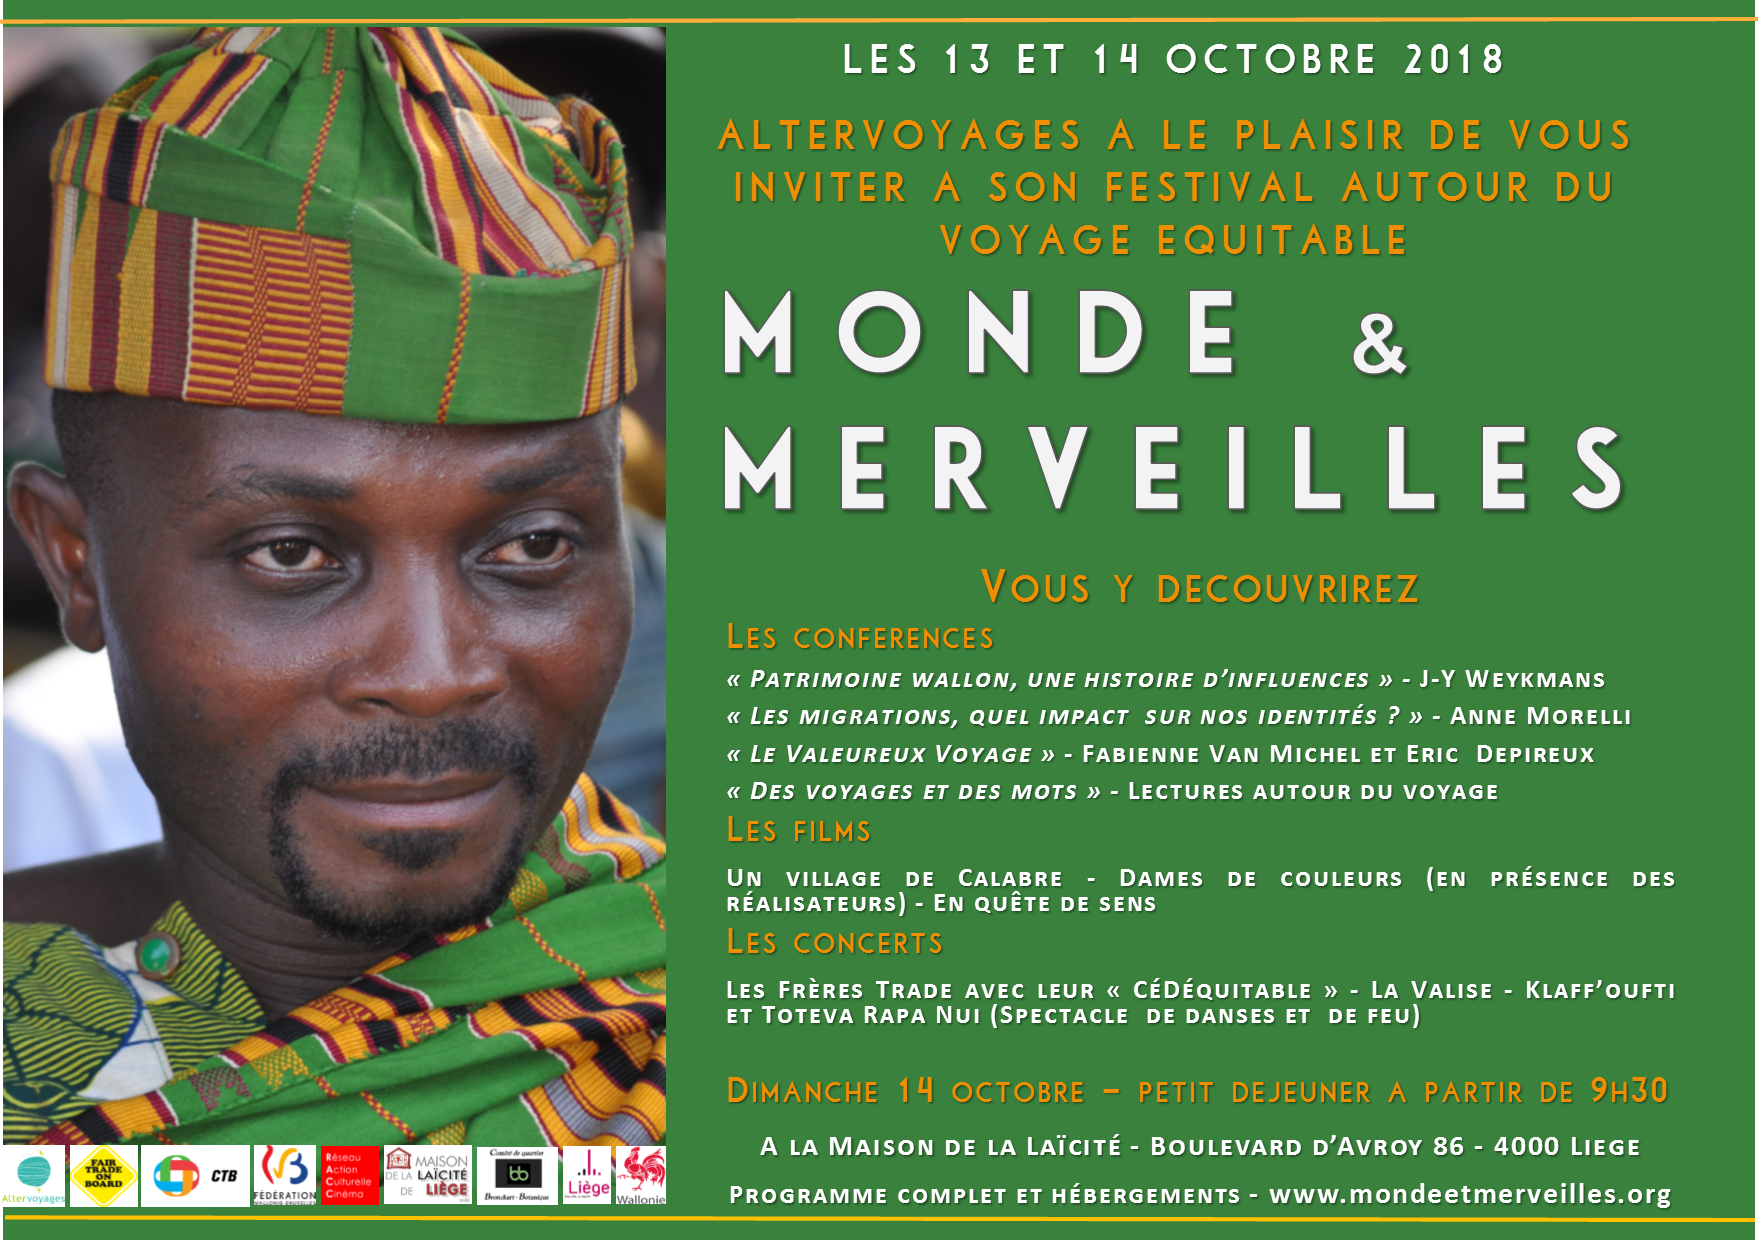 Viens rencontrer La Fouine ce samedi 6 octobre à Belle-Ile